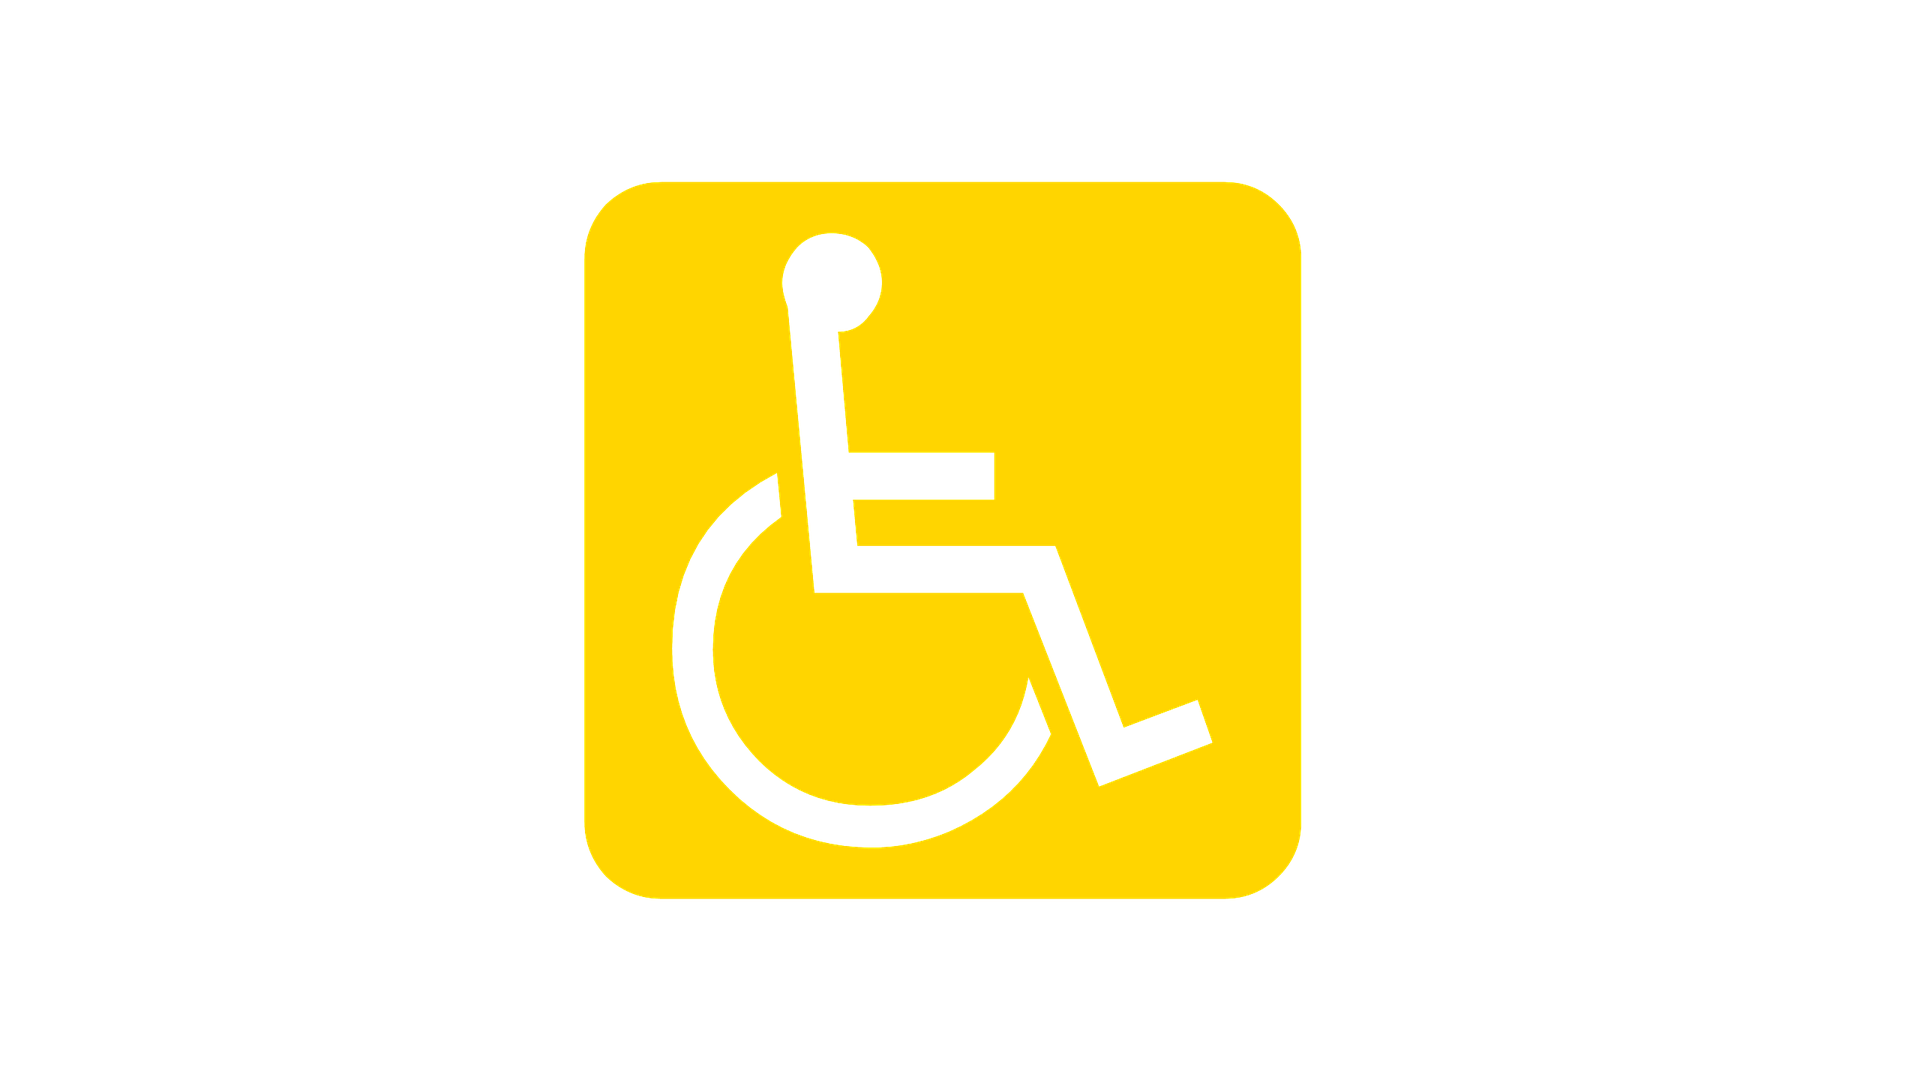 Disabilità: persone con disabilità alla guida